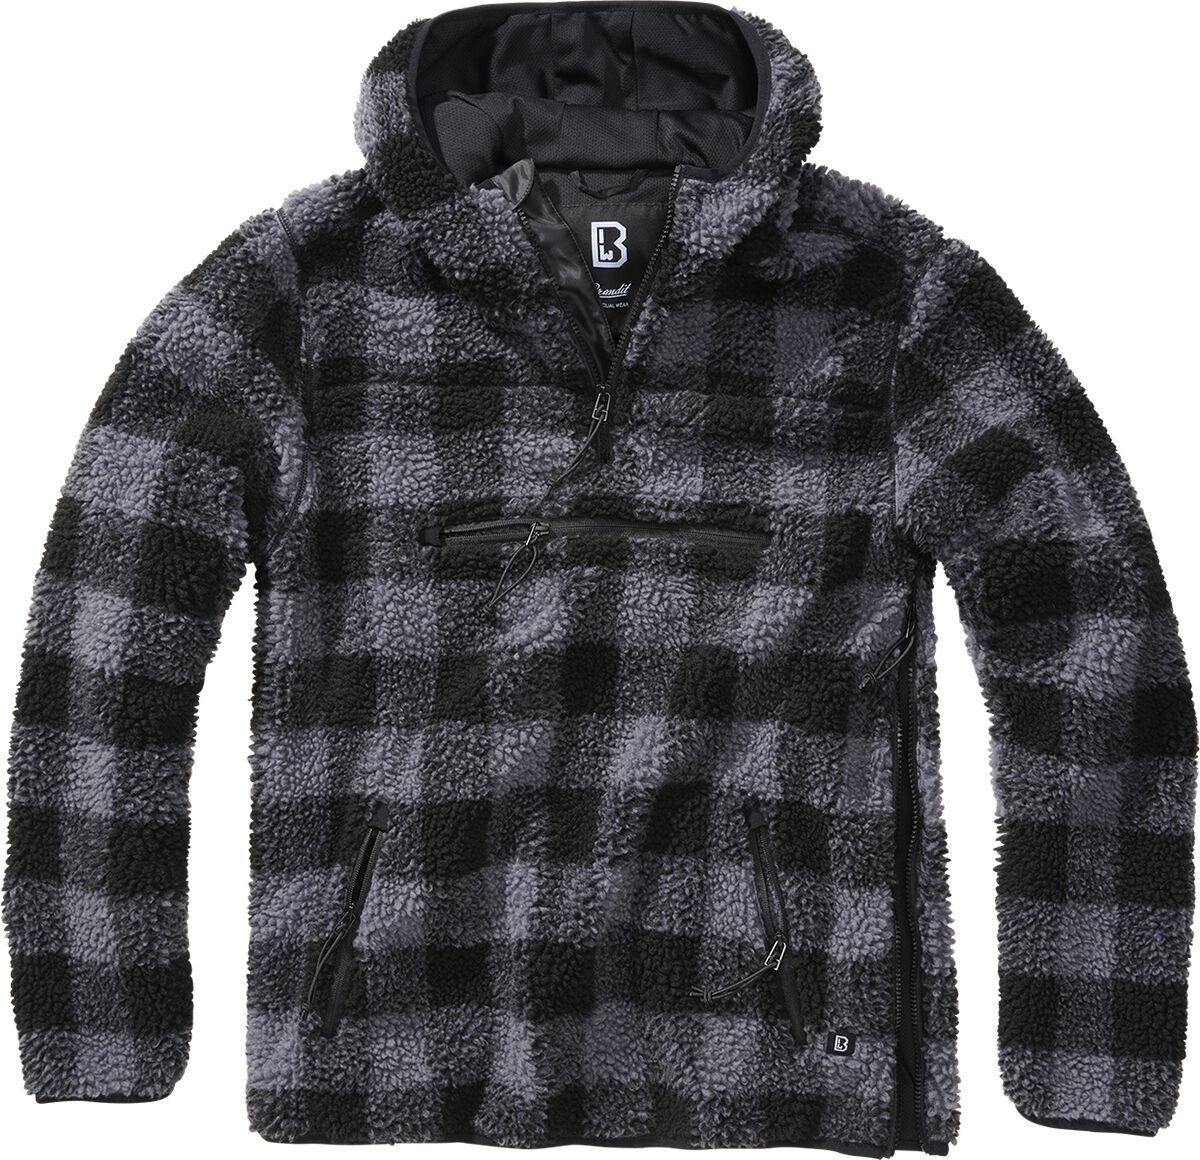 Brandit Kapuzenpullover - Teddyfleece Worker Pullover - S bis XL - für Männer - Größe L - schwarz/grau